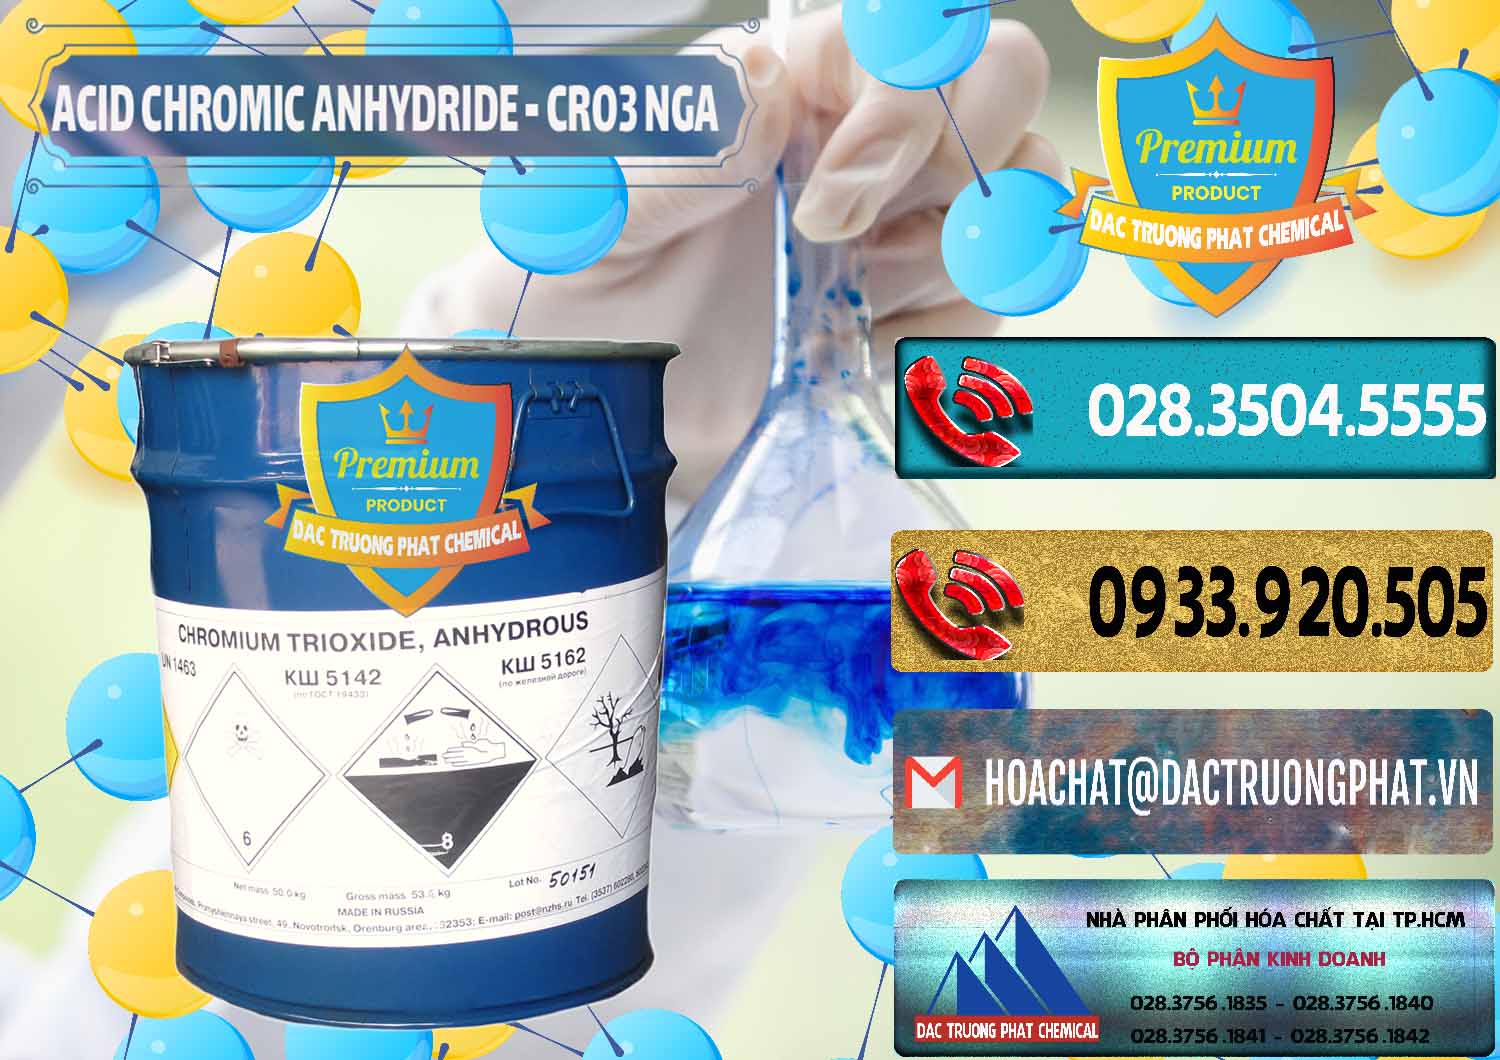 Cty chuyên bán - phân phối Acid Chromic Anhydride - Cromic CRO3 Nga Russia - 0006 - Cty chuyên kinh doanh _ phân phối hóa chất tại TP.HCM - hoachatdetnhuom.com